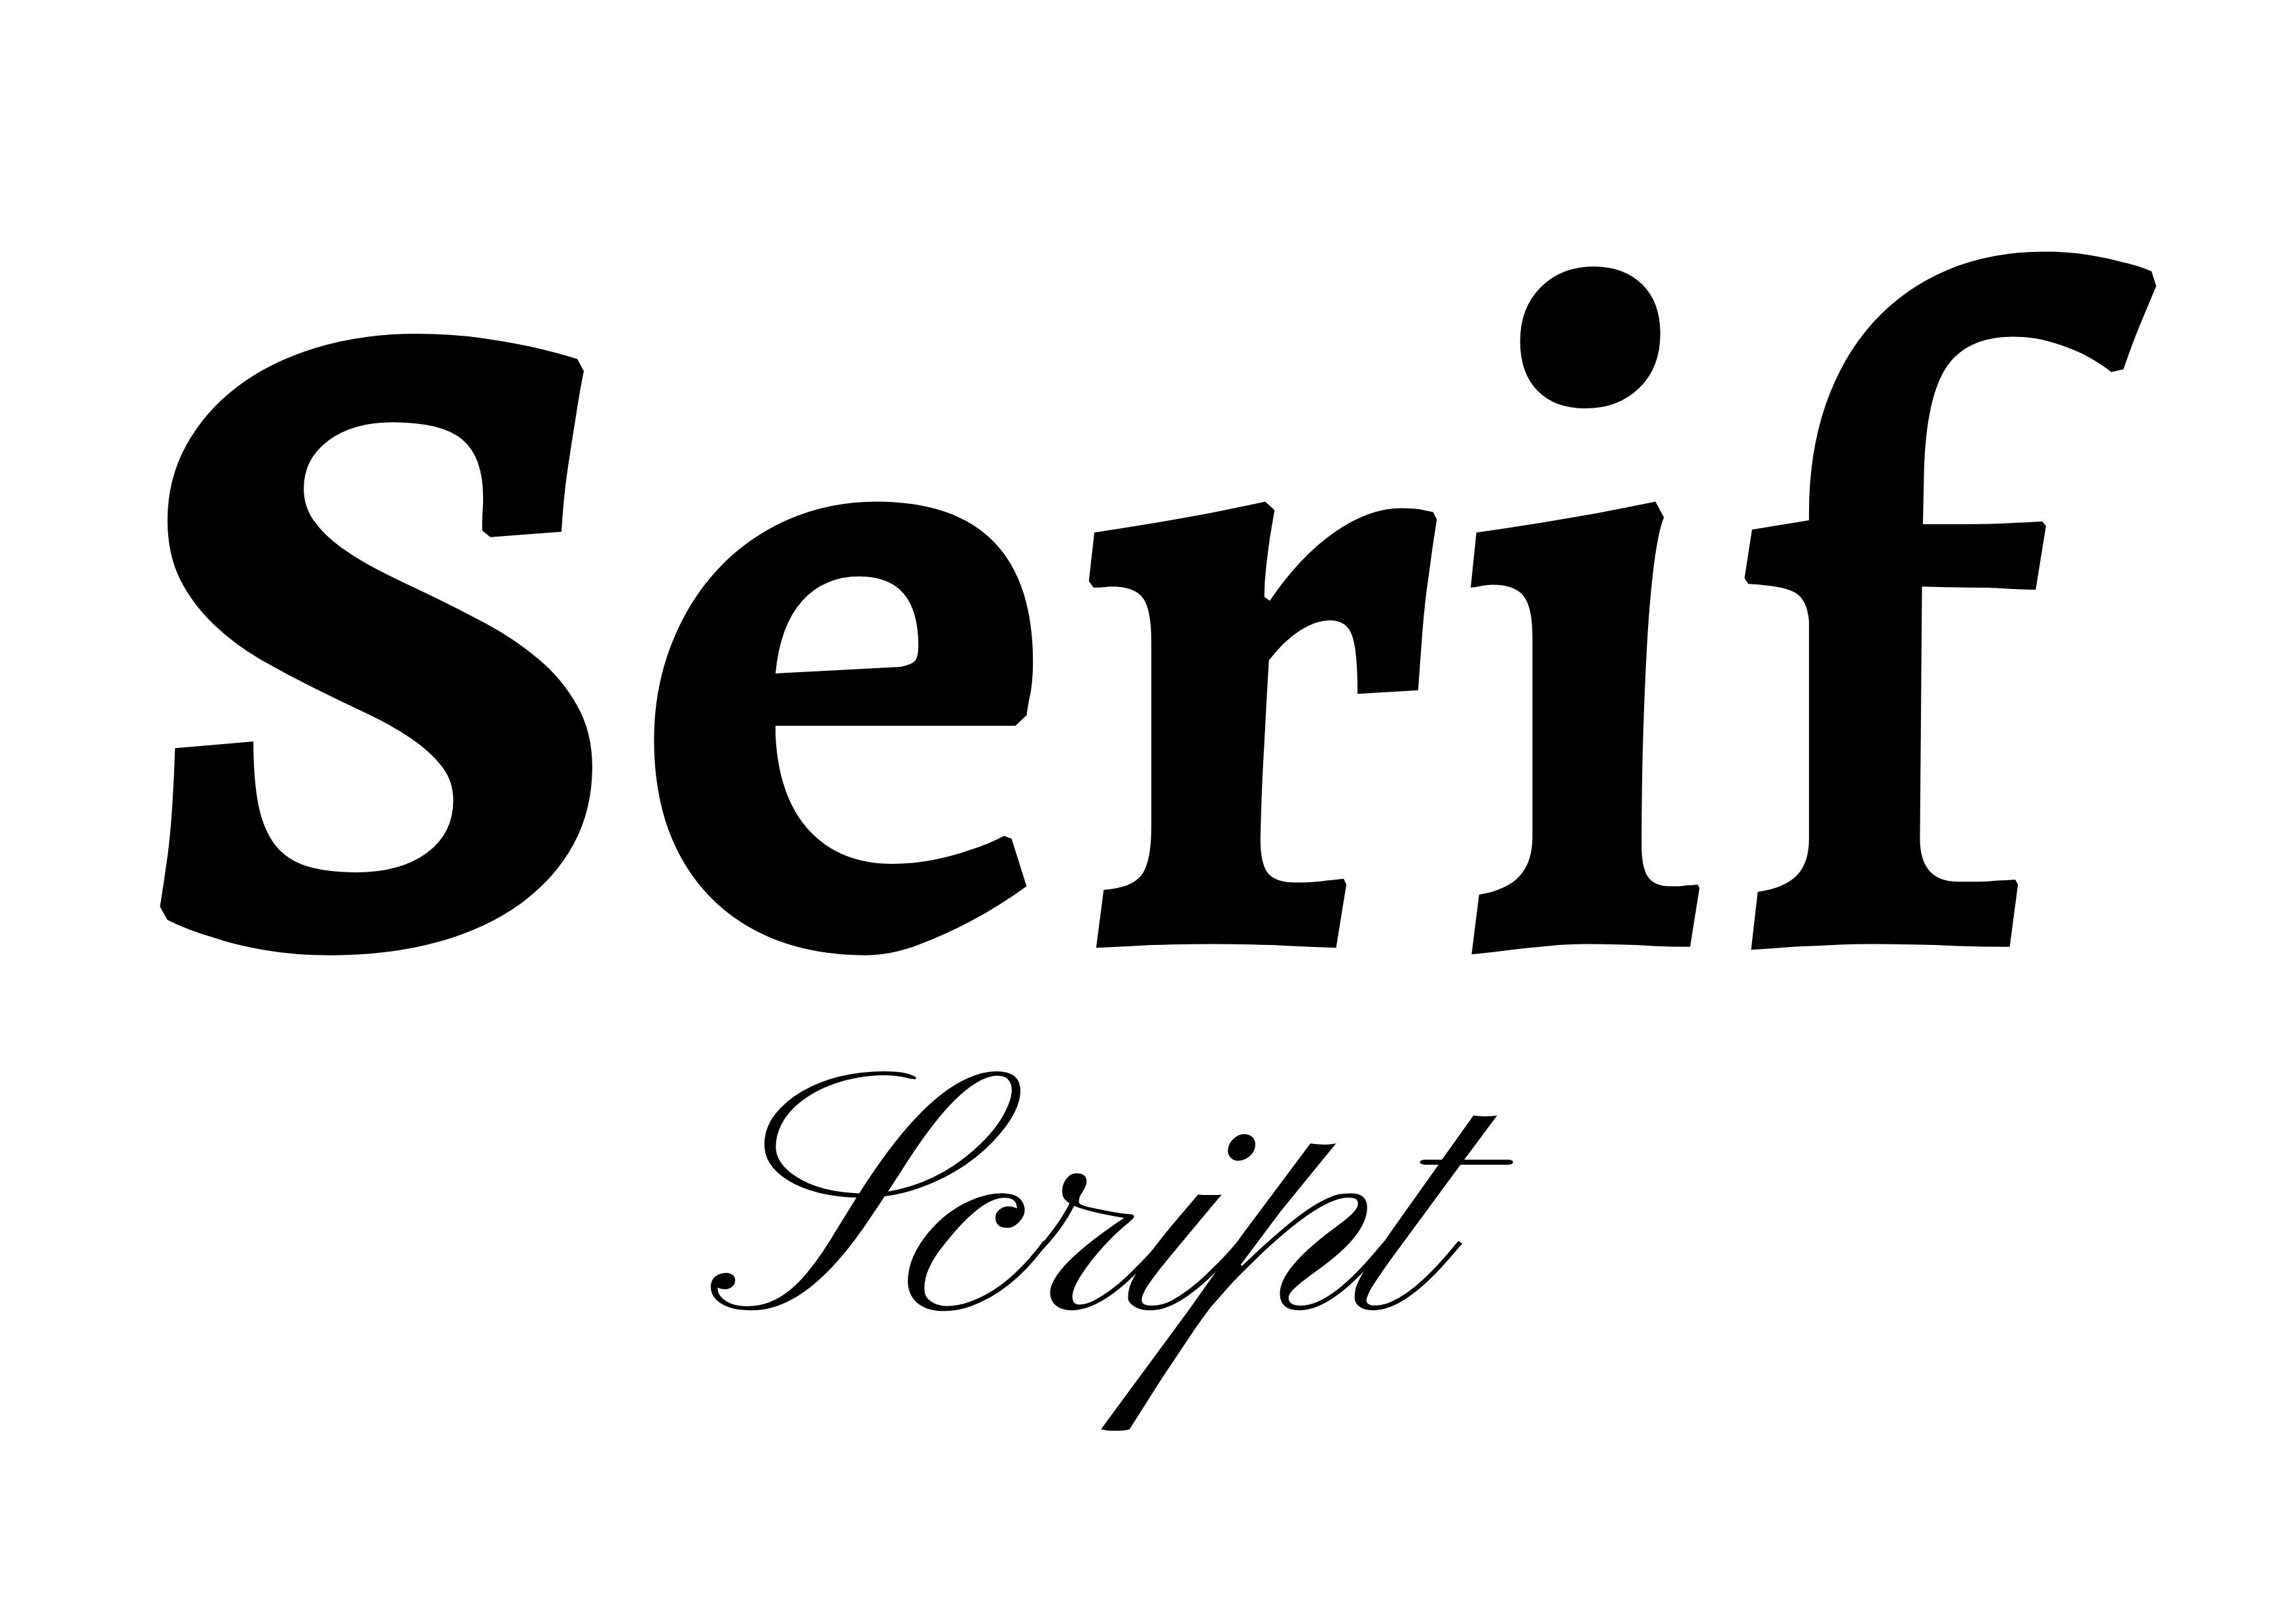 Schriftarten-Kombination - 'Serif' fett in Schwarz in der Mitte mit 'Script' darunter in Schwarz kleiner - Der vollständige Leitfaden zu Schriftarten: 5 wesentliche Schriftarten-Typen in der Typografie - Bild